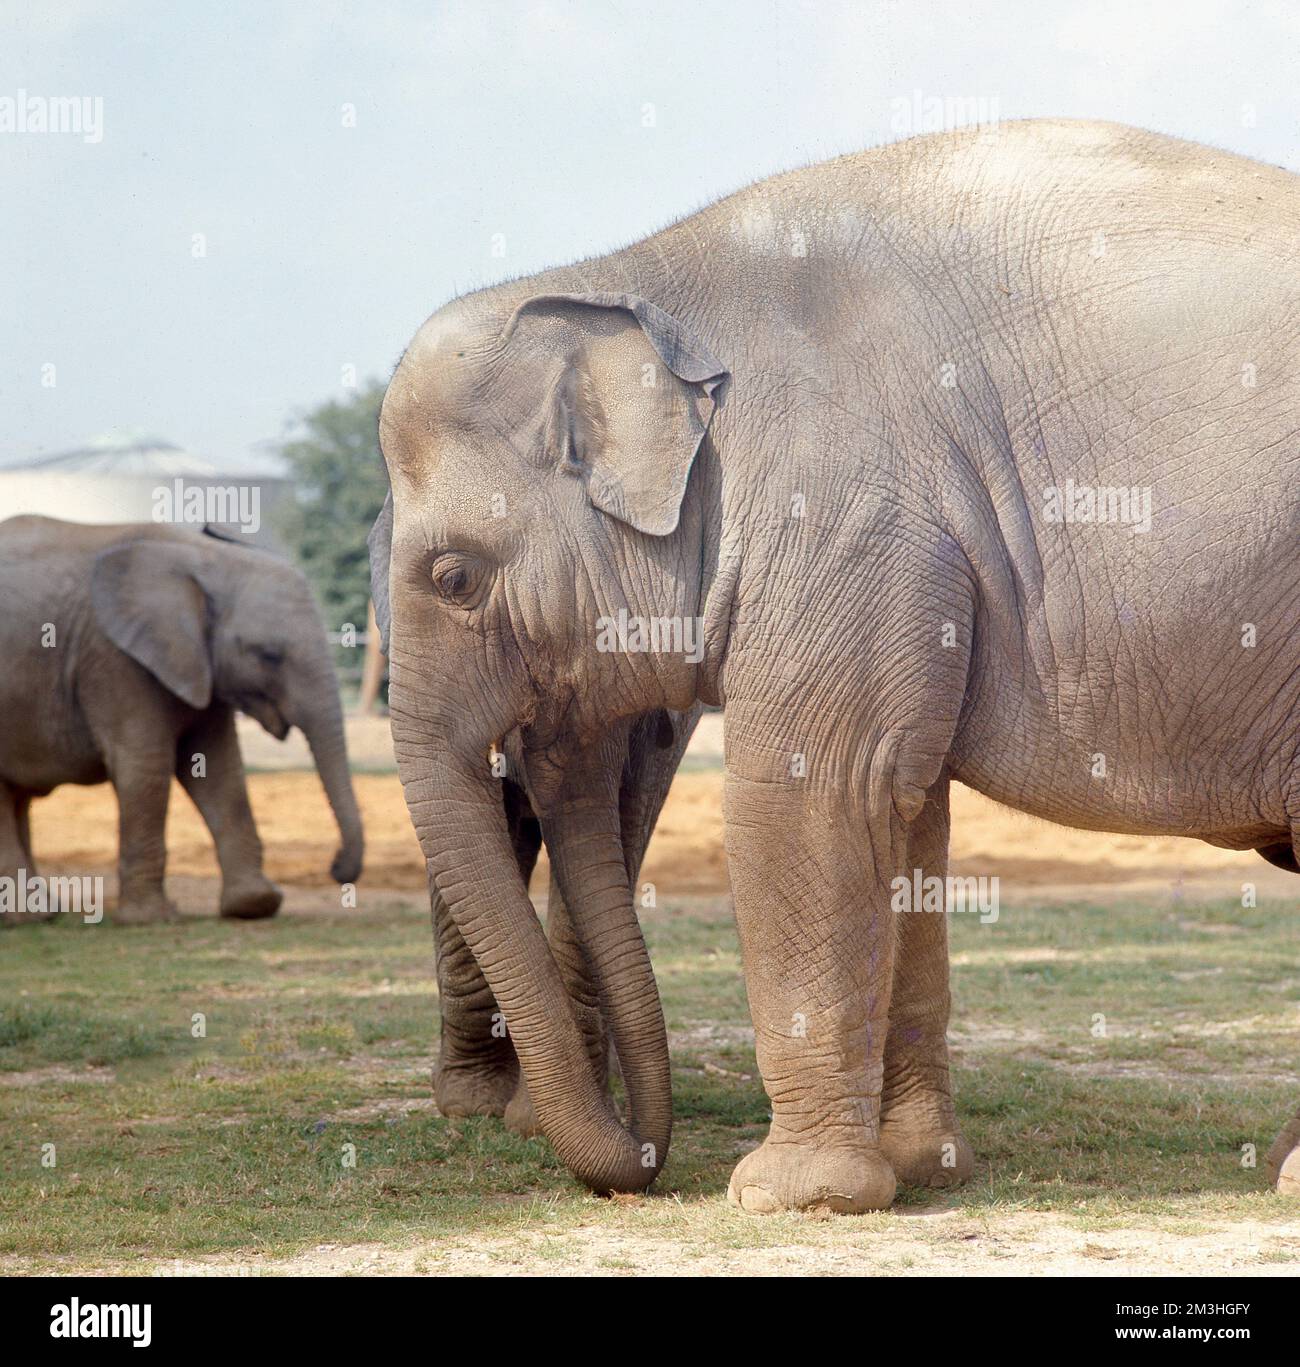 1980er, historisch, Seitenansicht eines asiatischen Elefanten draußen in einem Safaripark, England, Großbritannien. Das Bild zeigt einen indischen Elefanten, seine Größe und Form und seine lederne, hellbraune Haut. Stockfoto